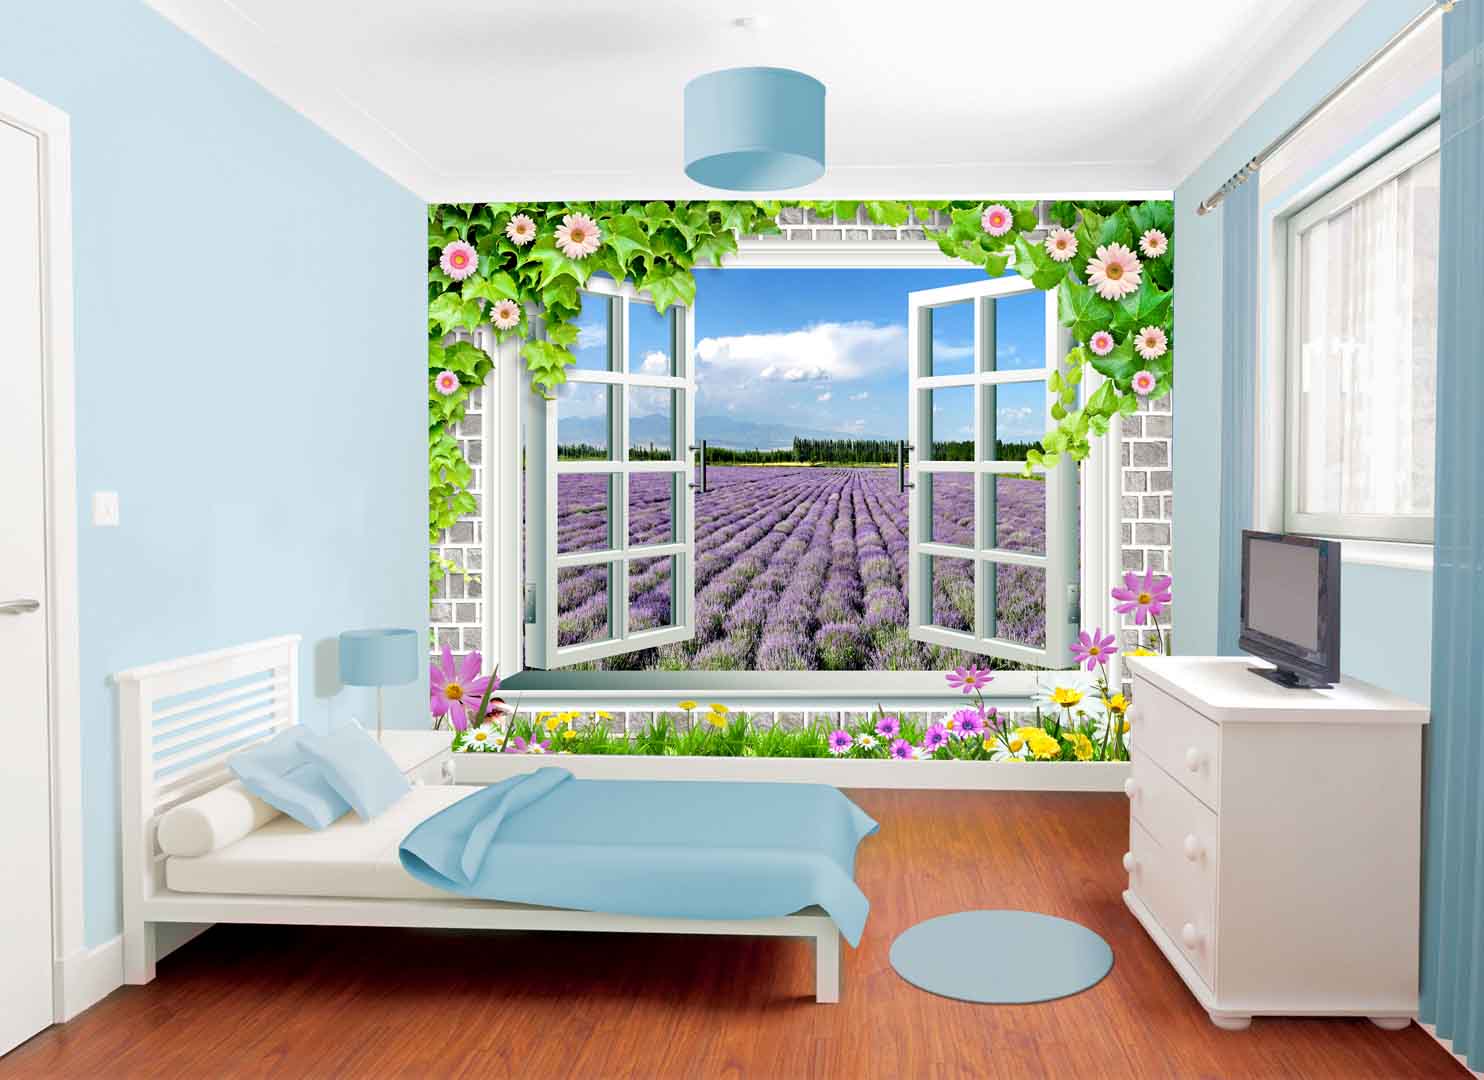 VIPcorel.com_tranh vach tuong khung cua so nhin ra vuon hoa lavender hoa oai huong.jpg